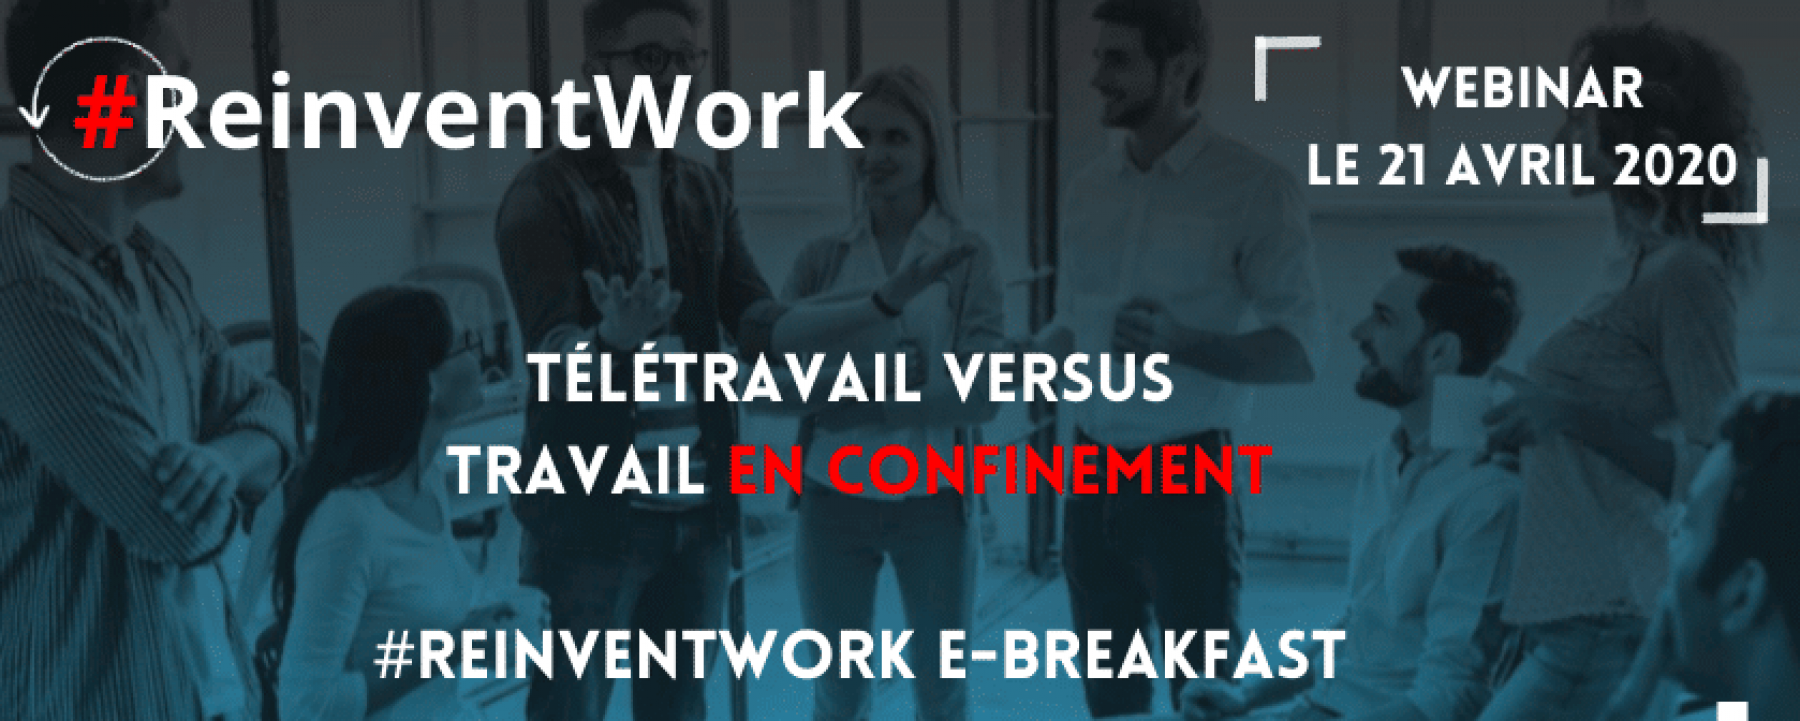 Webinar #Reinventwork : télétravail vs travailler en confinement, le 21 avril 2020, organisé par ACSEL